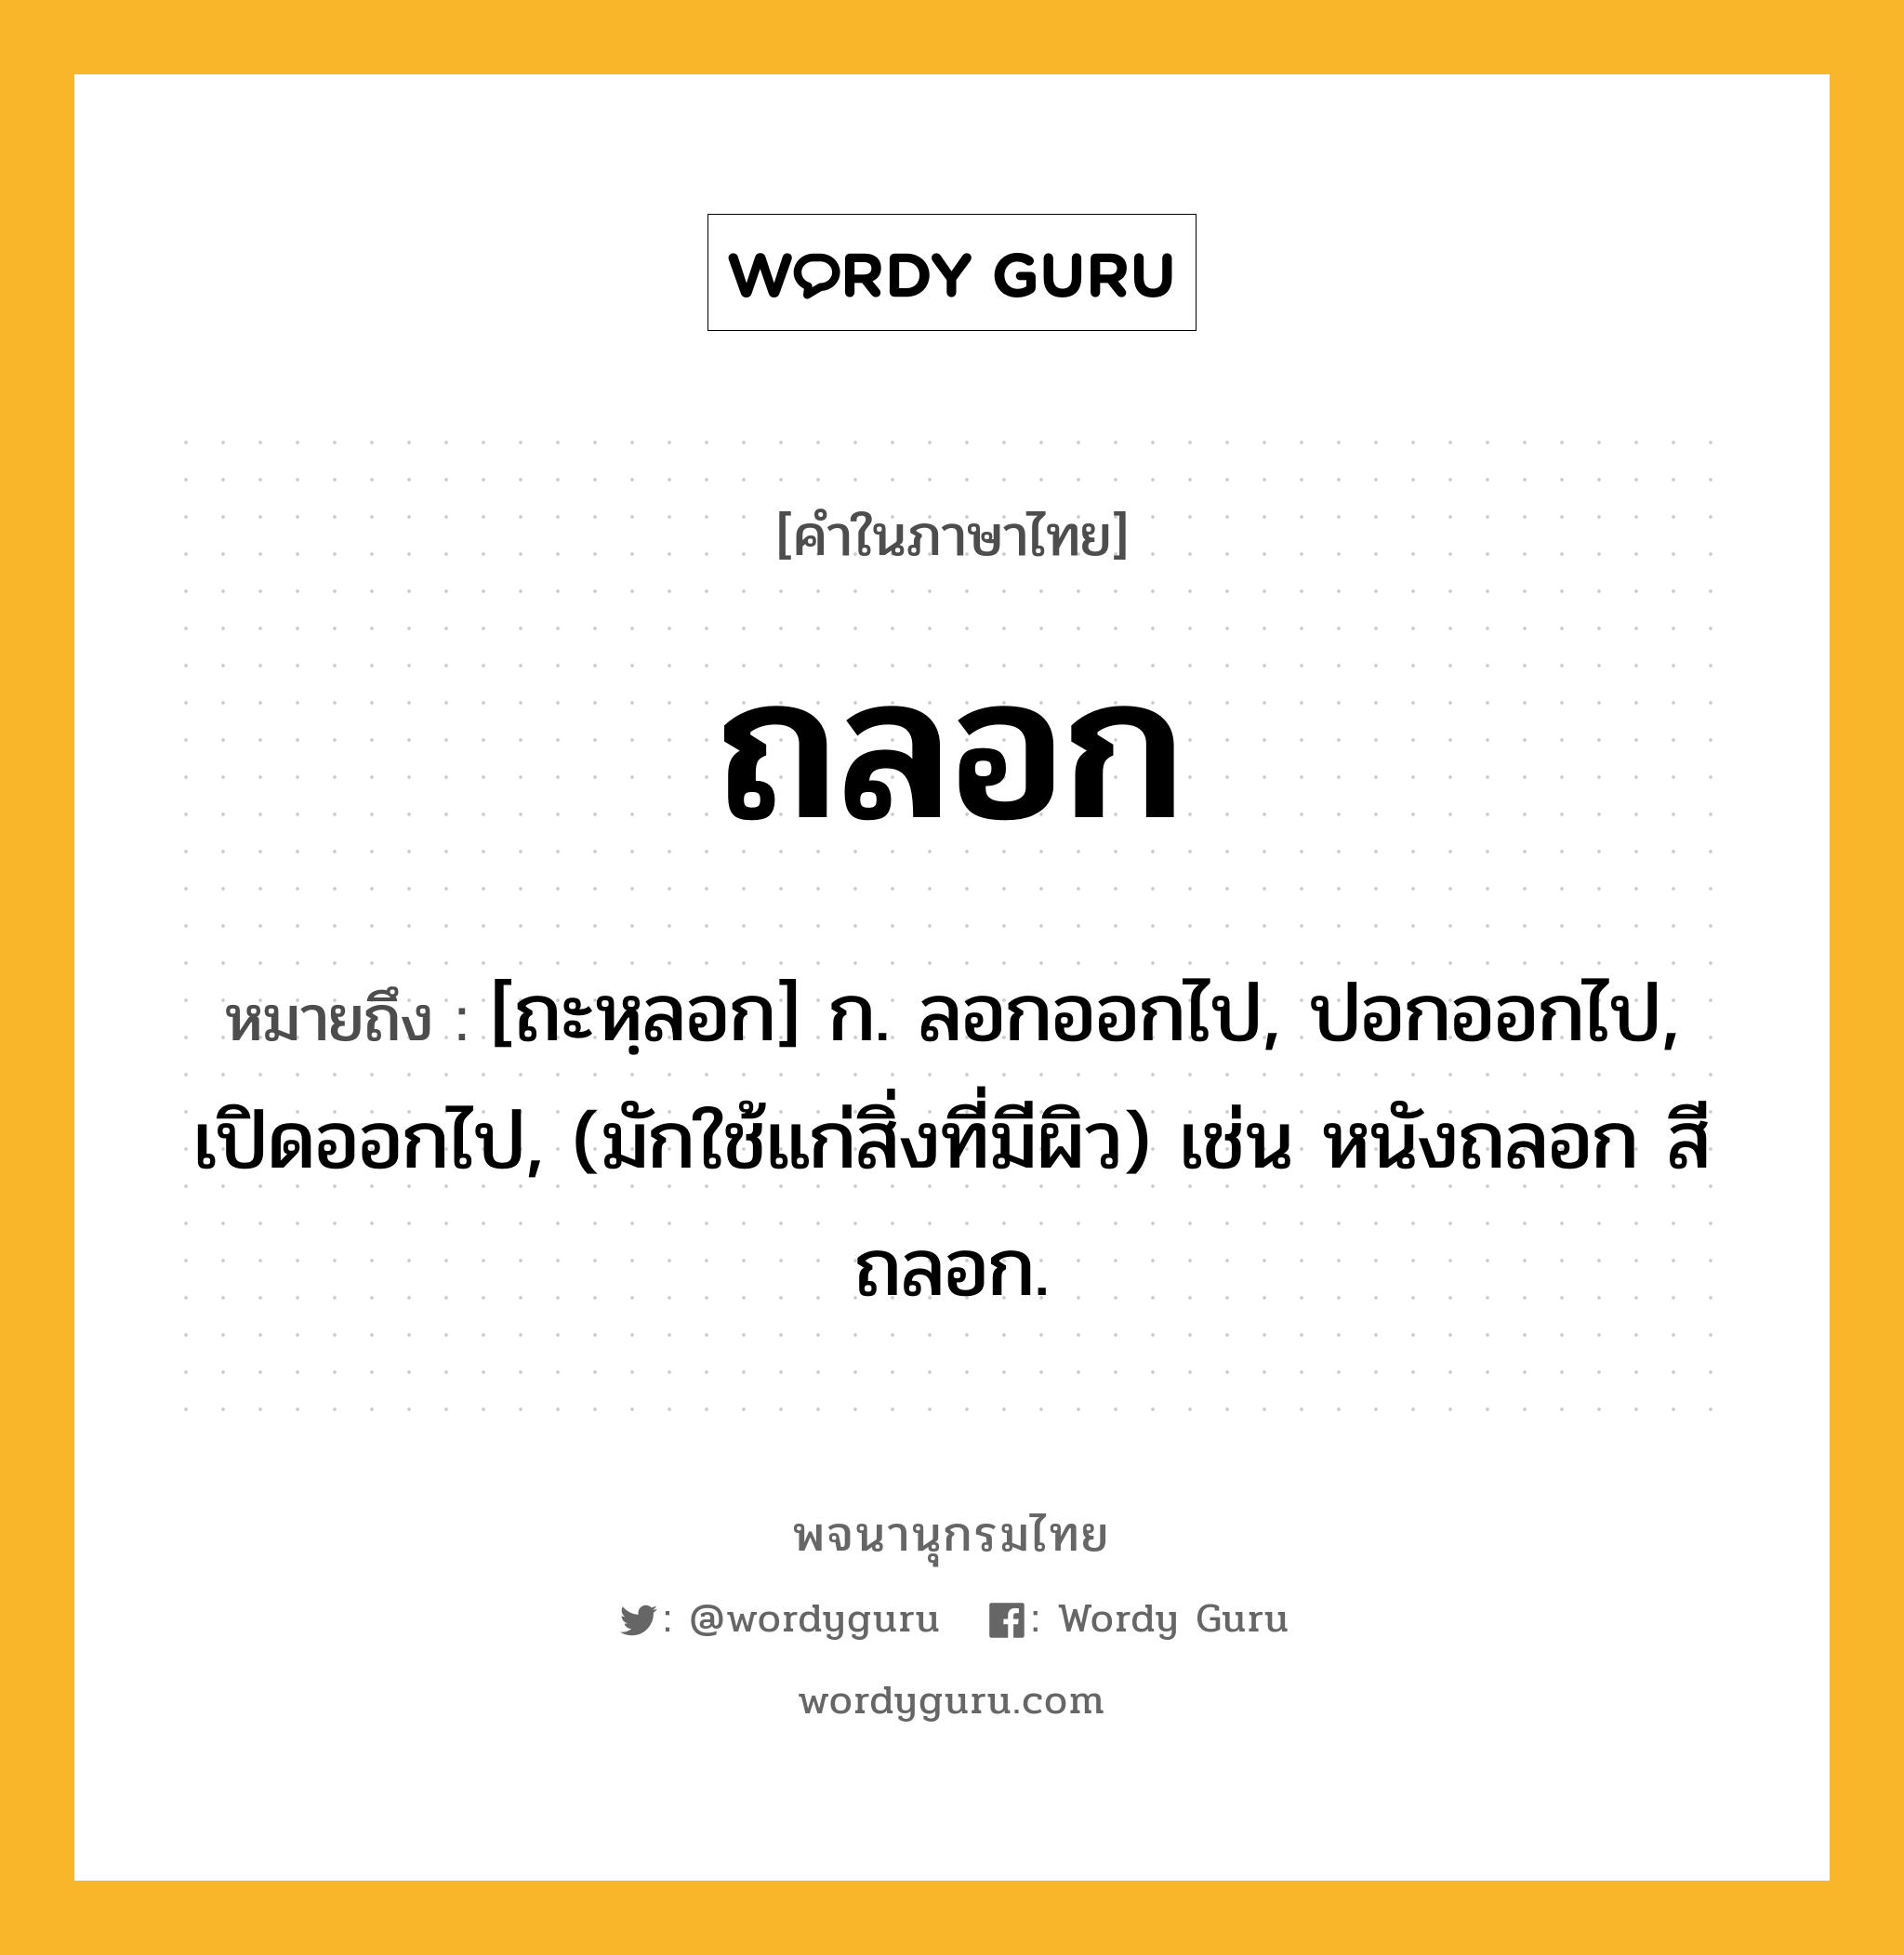 ถลอก หมายถึงอะไร?, คำในภาษาไทย ถลอก หมายถึง [ถะหฺลอก] ก. ลอกออกไป, ปอกออกไป, เปิดออกไป, (มักใช้แก่สิ่งที่มีผิว) เช่น หนังถลอก สีถลอก.